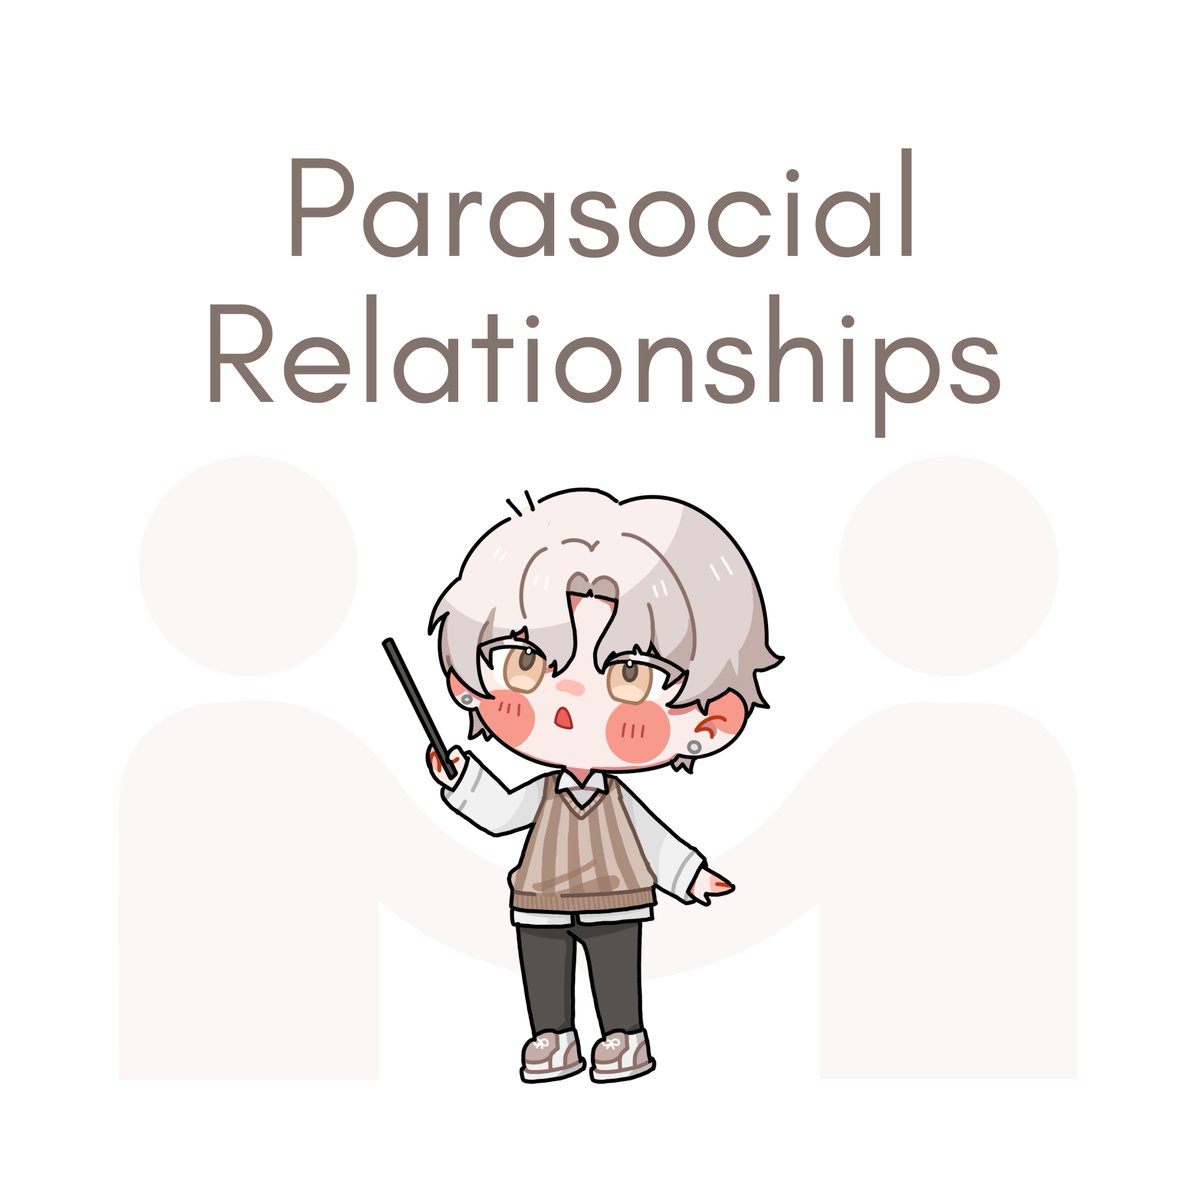 เธรดนี้ผมจะมาพูดถึง Parasocial Relationships ที่เป็นจะพฤติกรรมที่เกิดขึ้นในปัจจุบันกันครับ 🤍

'Parasocial Relationships' หรือ 'ความสัมพันธ์แบบพาราโซเชียล' มักเป็นสิ่งที่เกิดขึ้นอย่างแพร่หลายในสื่อบันเทิง เช่น ดารา, นักร้อง, Youtuber, Anime หรือแม้กระทั่งวงการ Vtuber ก็ตามครับ